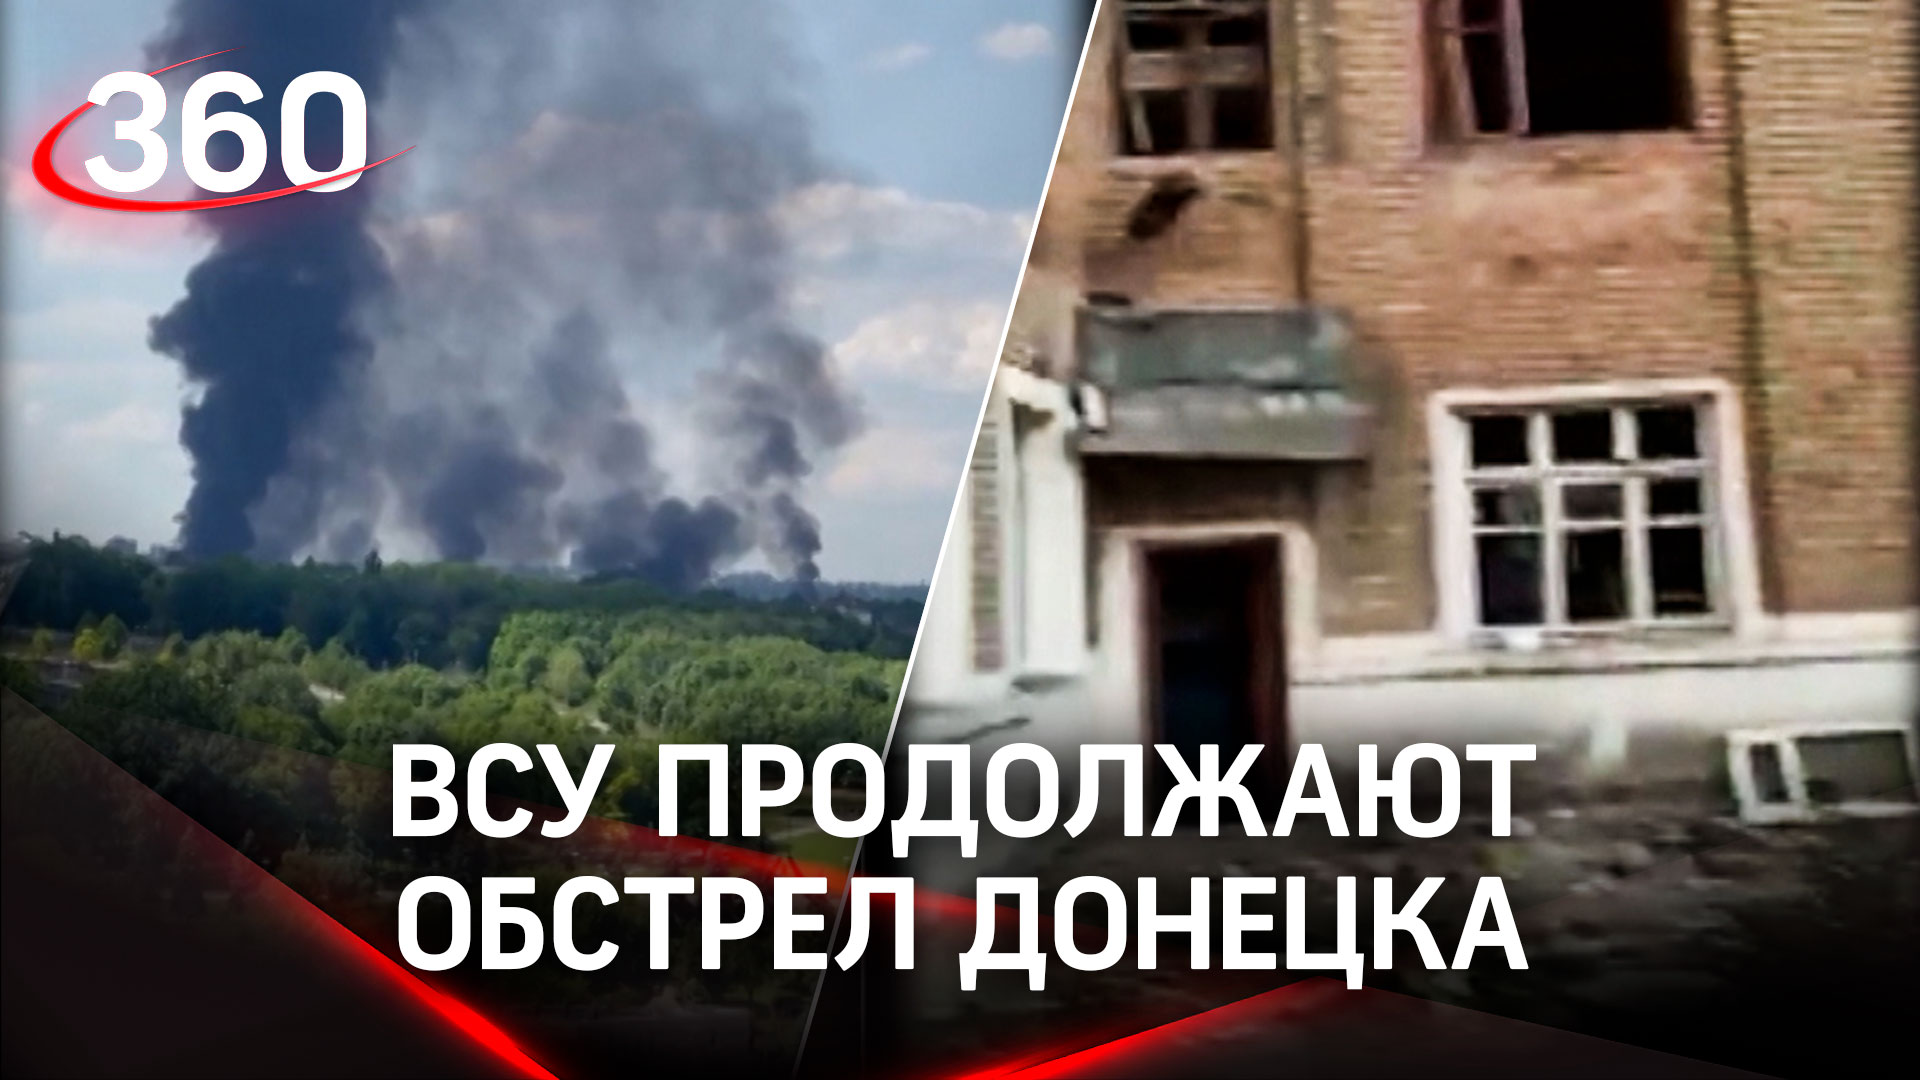 Минимум 77 горняков заблокированы в шахте имени Засядько в Донецке после обстрела ВСУ